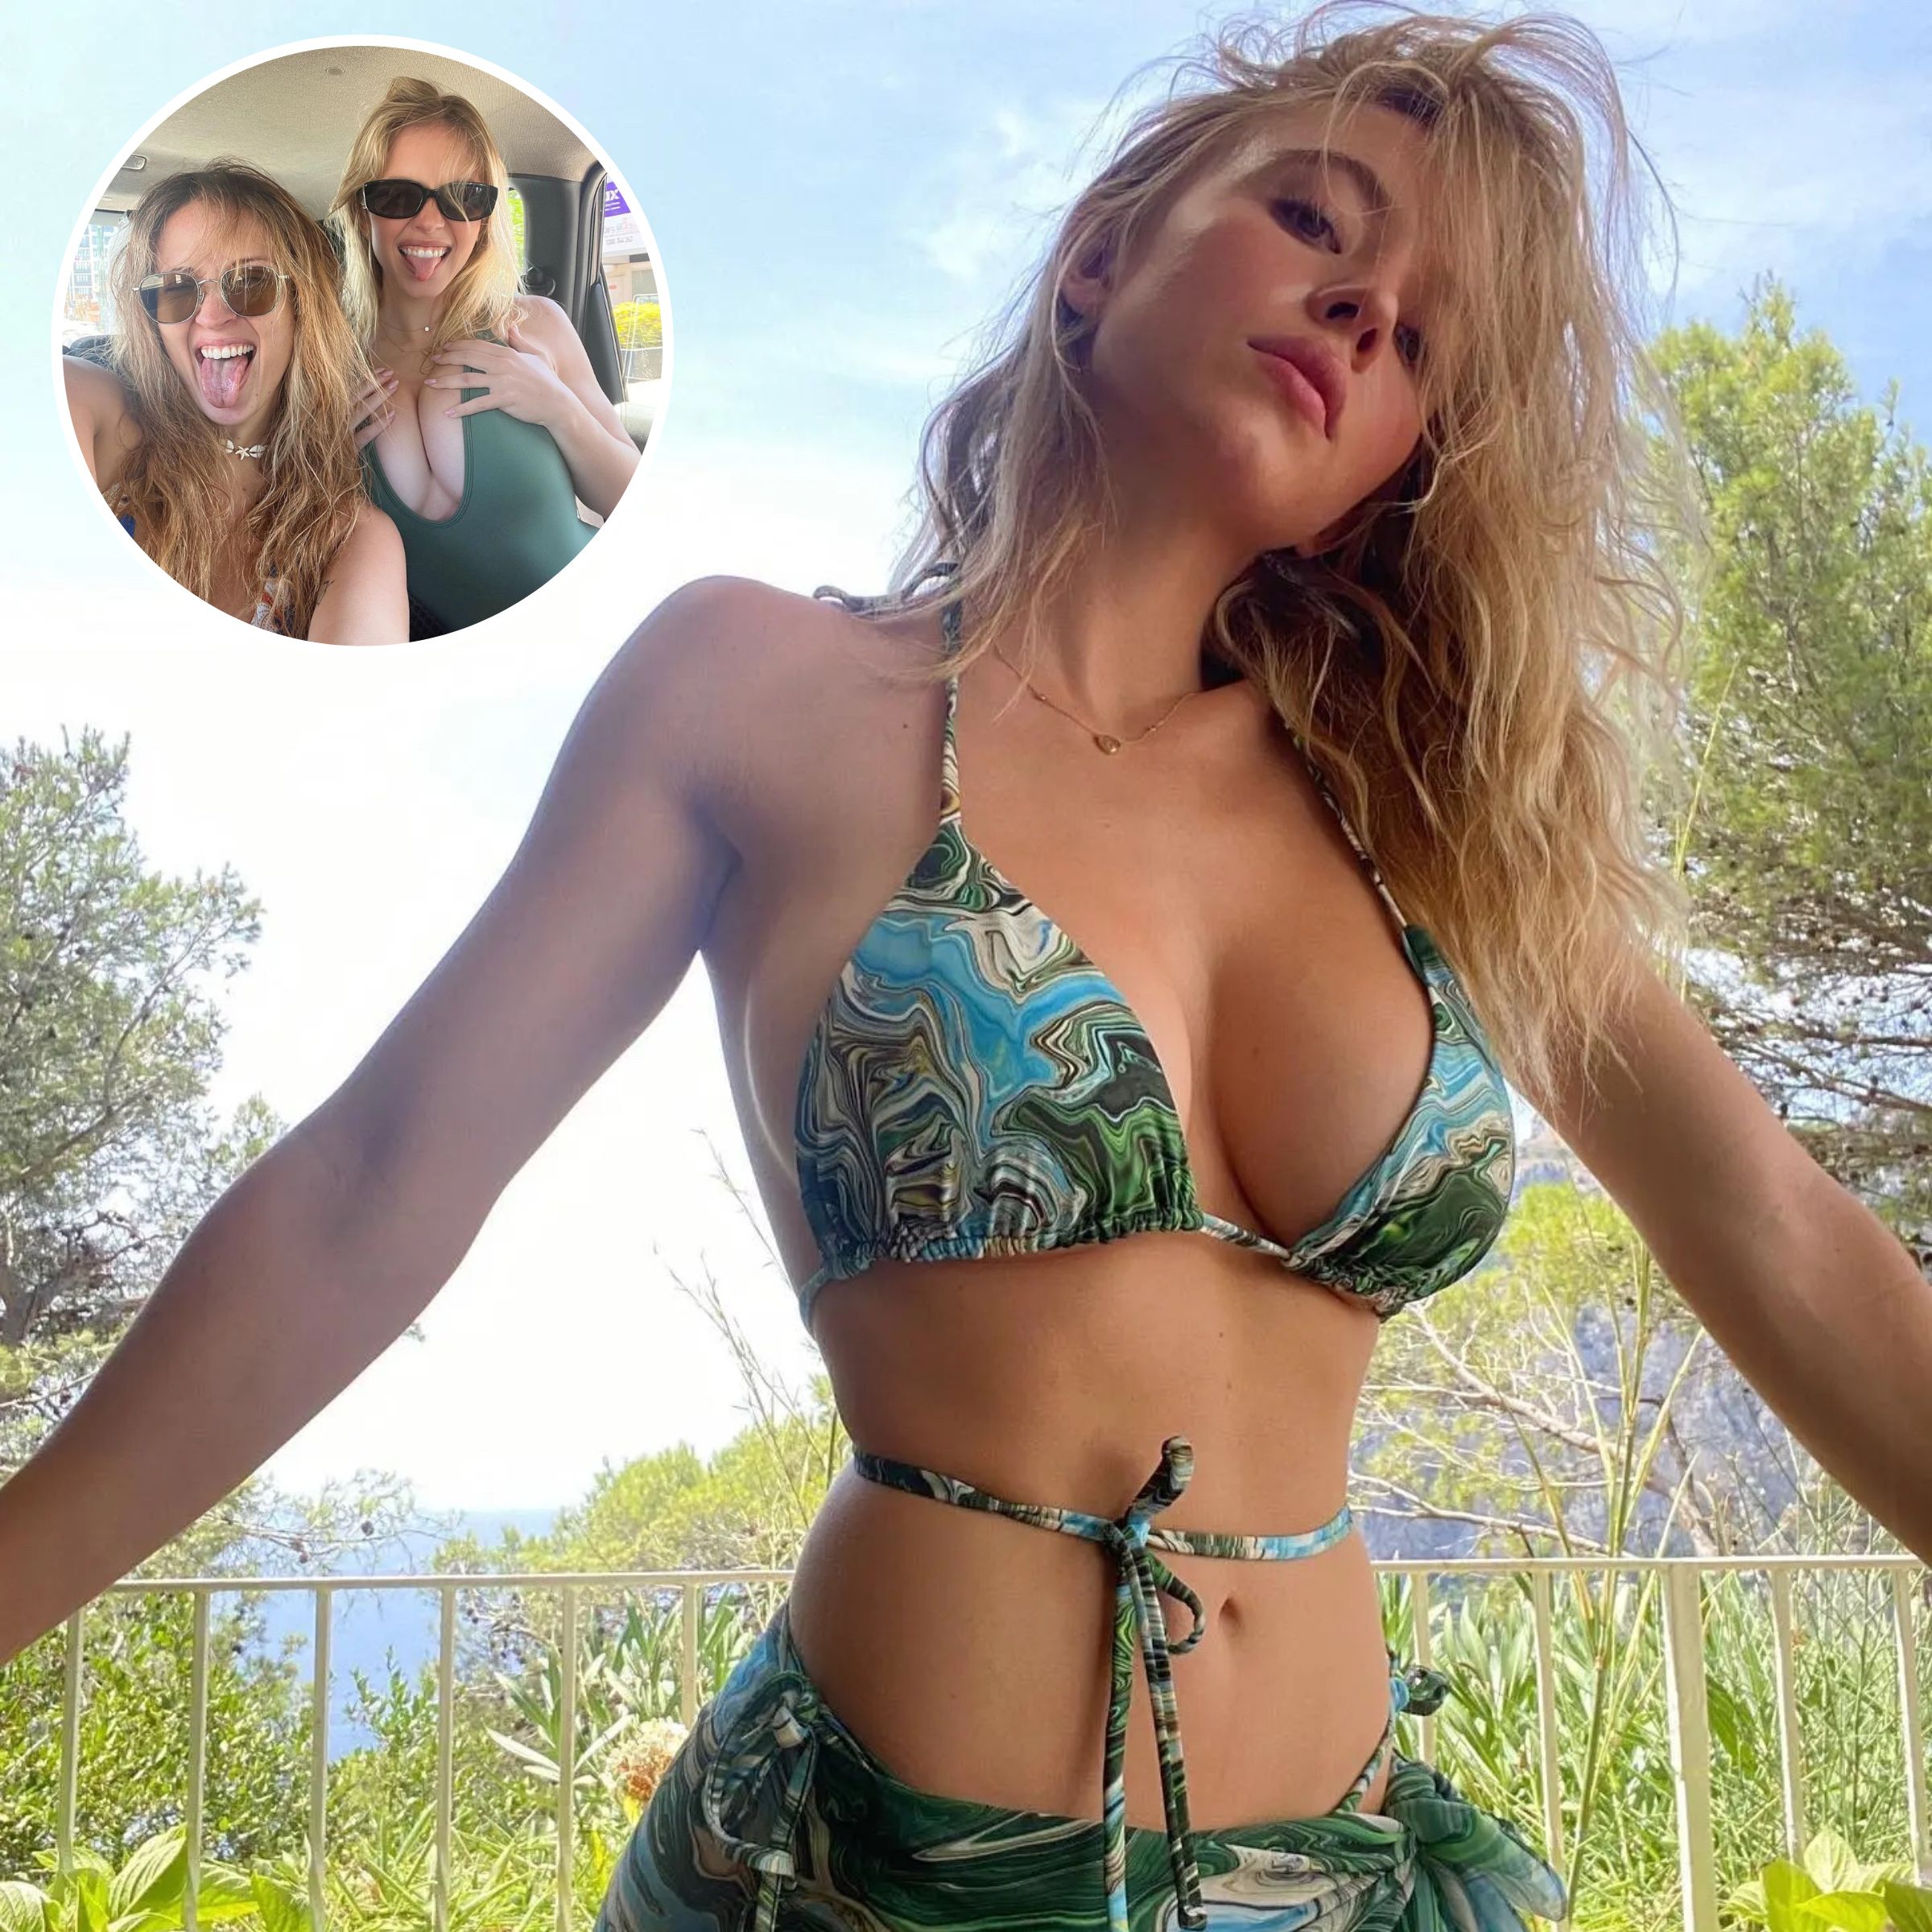 Sydney Sweeney Bikini Pictures: 'Euphoria' Star's Swimsuit Photos